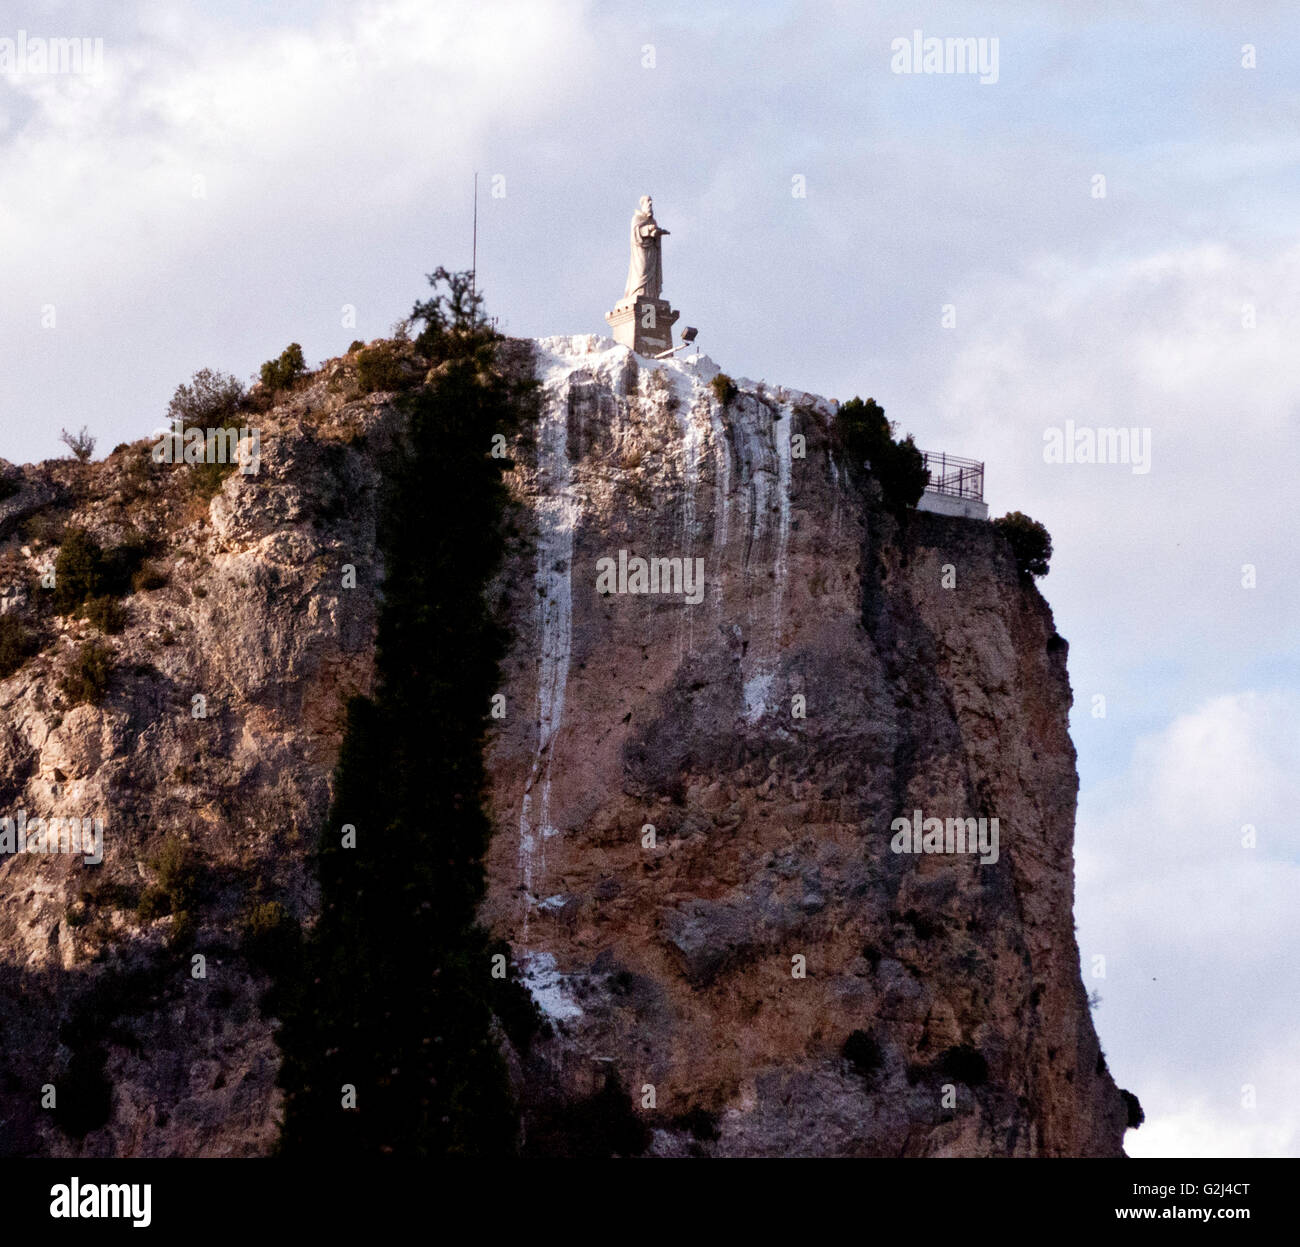 Religious Monument on Mountain Top, Near Igay, Spain Stock Photo